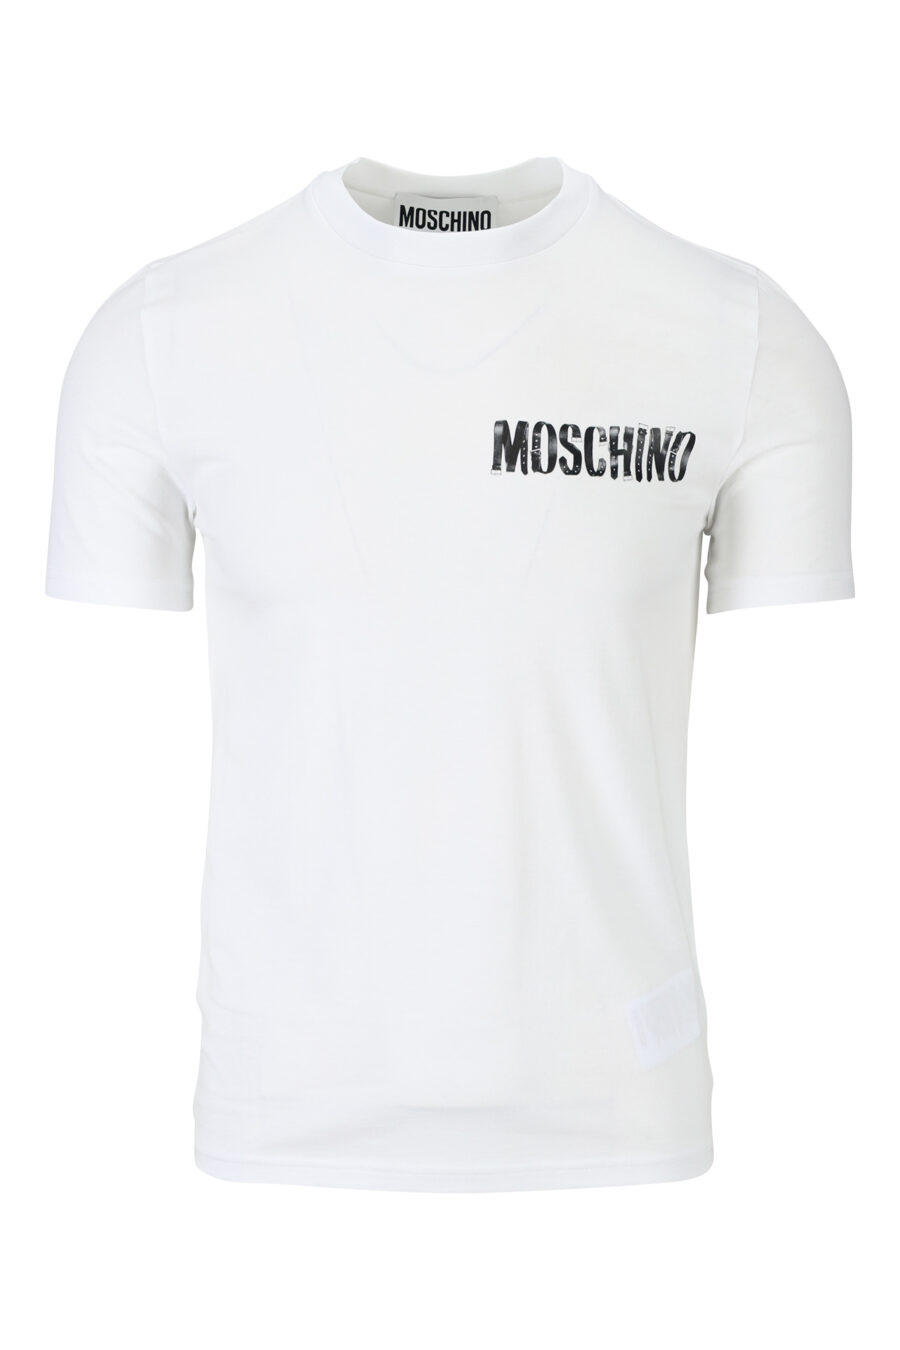 T-shirt blanc avec minilogue noir porté - 889316938791